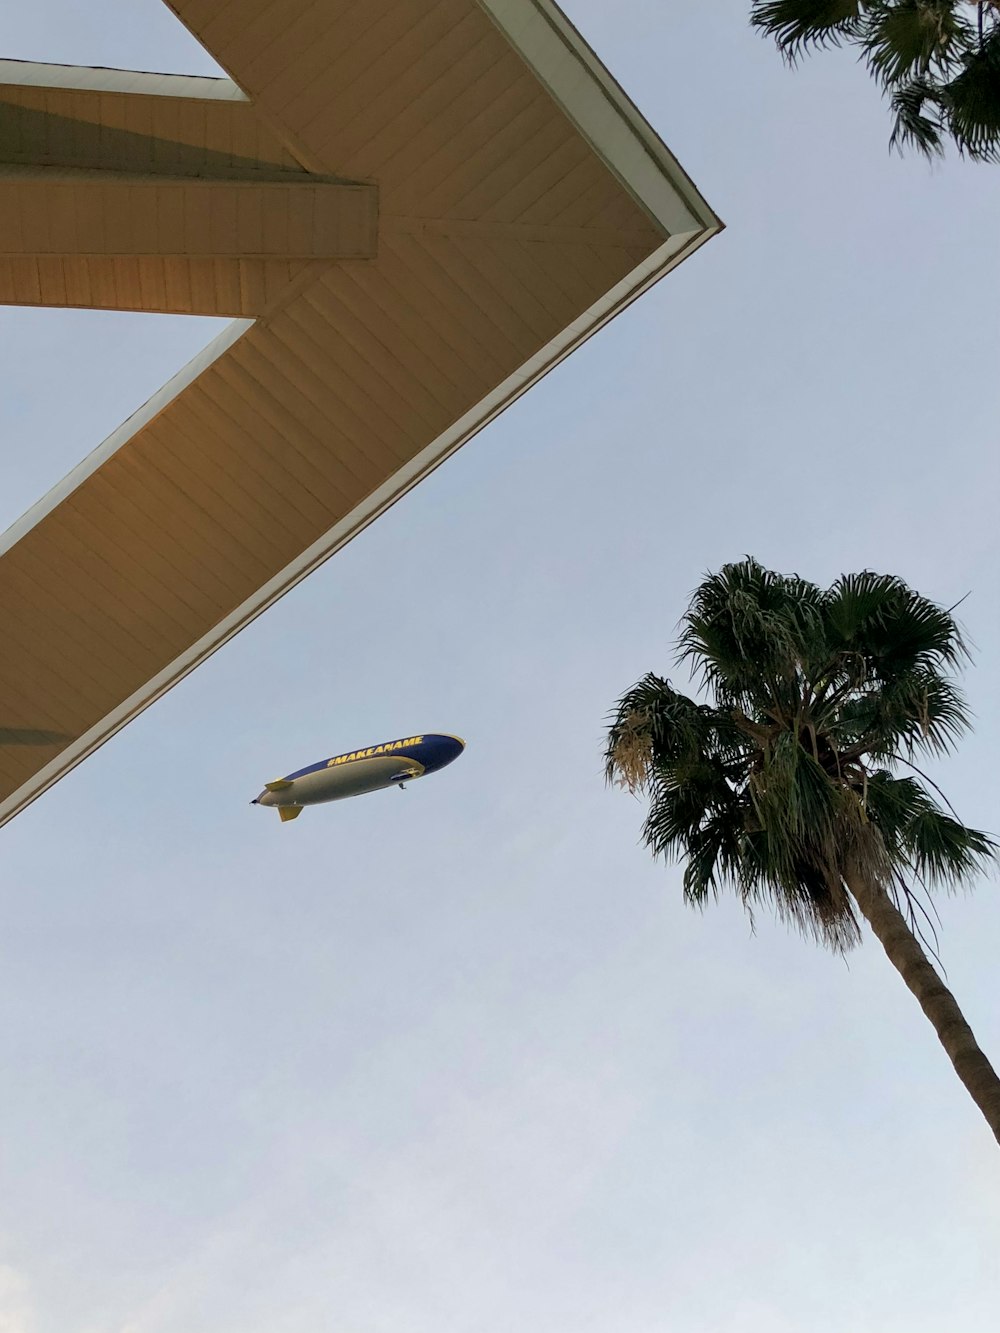 Ein Flugzeug fliegt über ein Gebäude